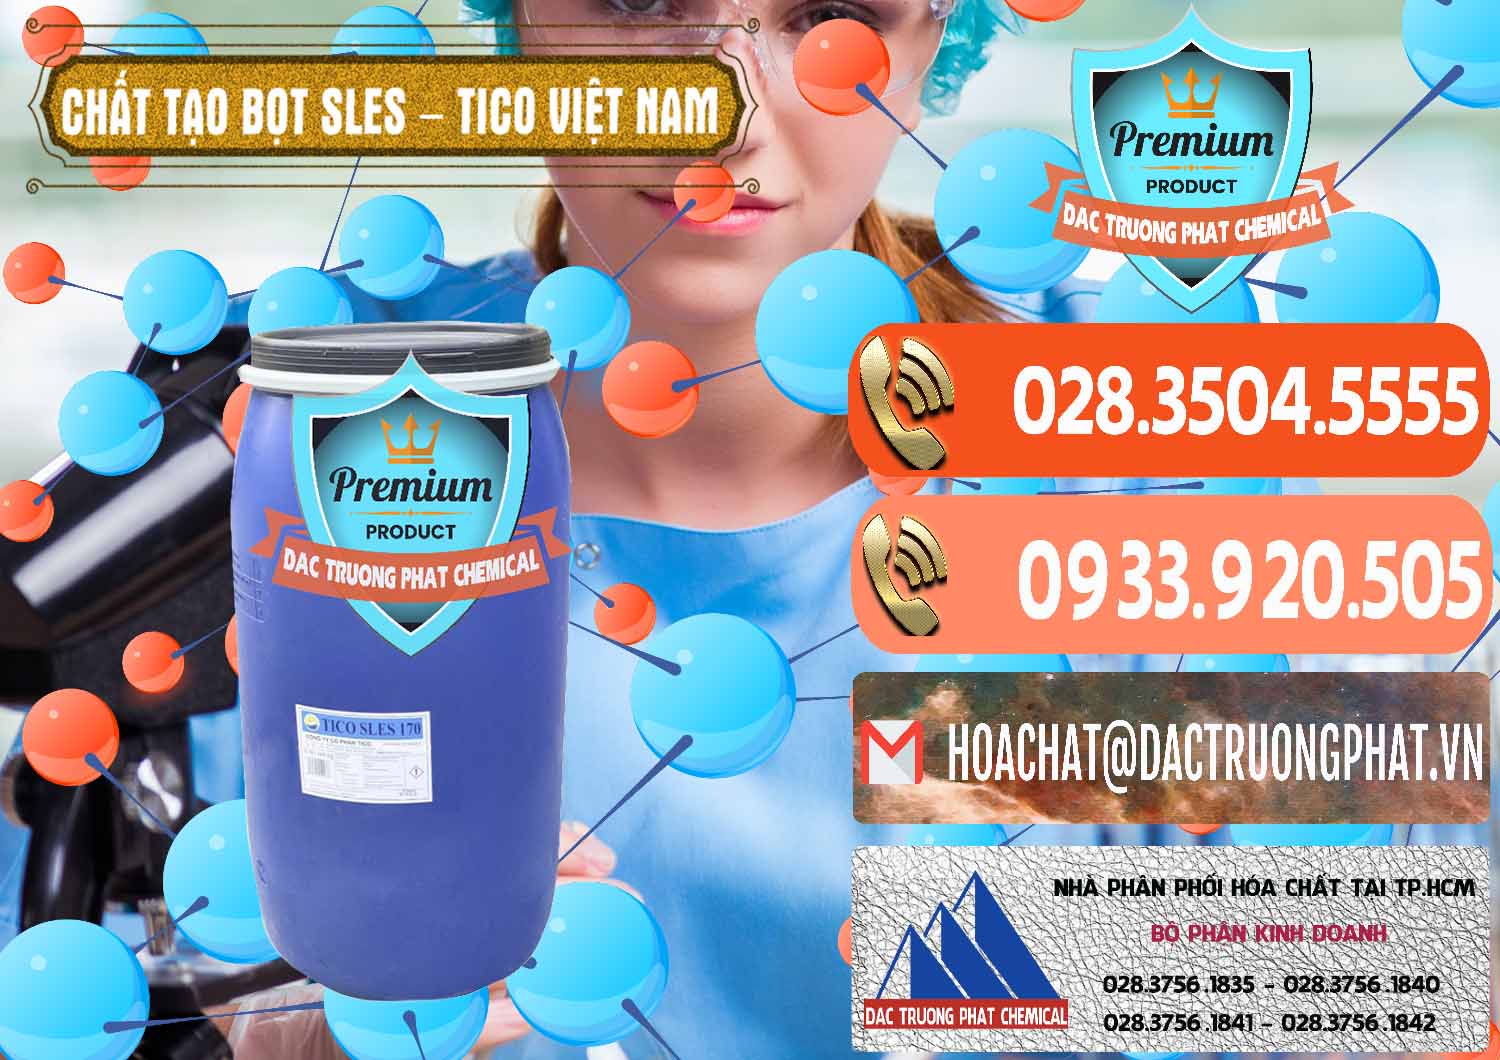 Cty chuyên cung ứng - bán Chất Tạo Bọt Sles - Sodium Lauryl Ether Sulphate Tico Việt Nam - 0304 - Chuyên kinh doanh và phân phối hóa chất tại TP.HCM - hoachatmientay.com